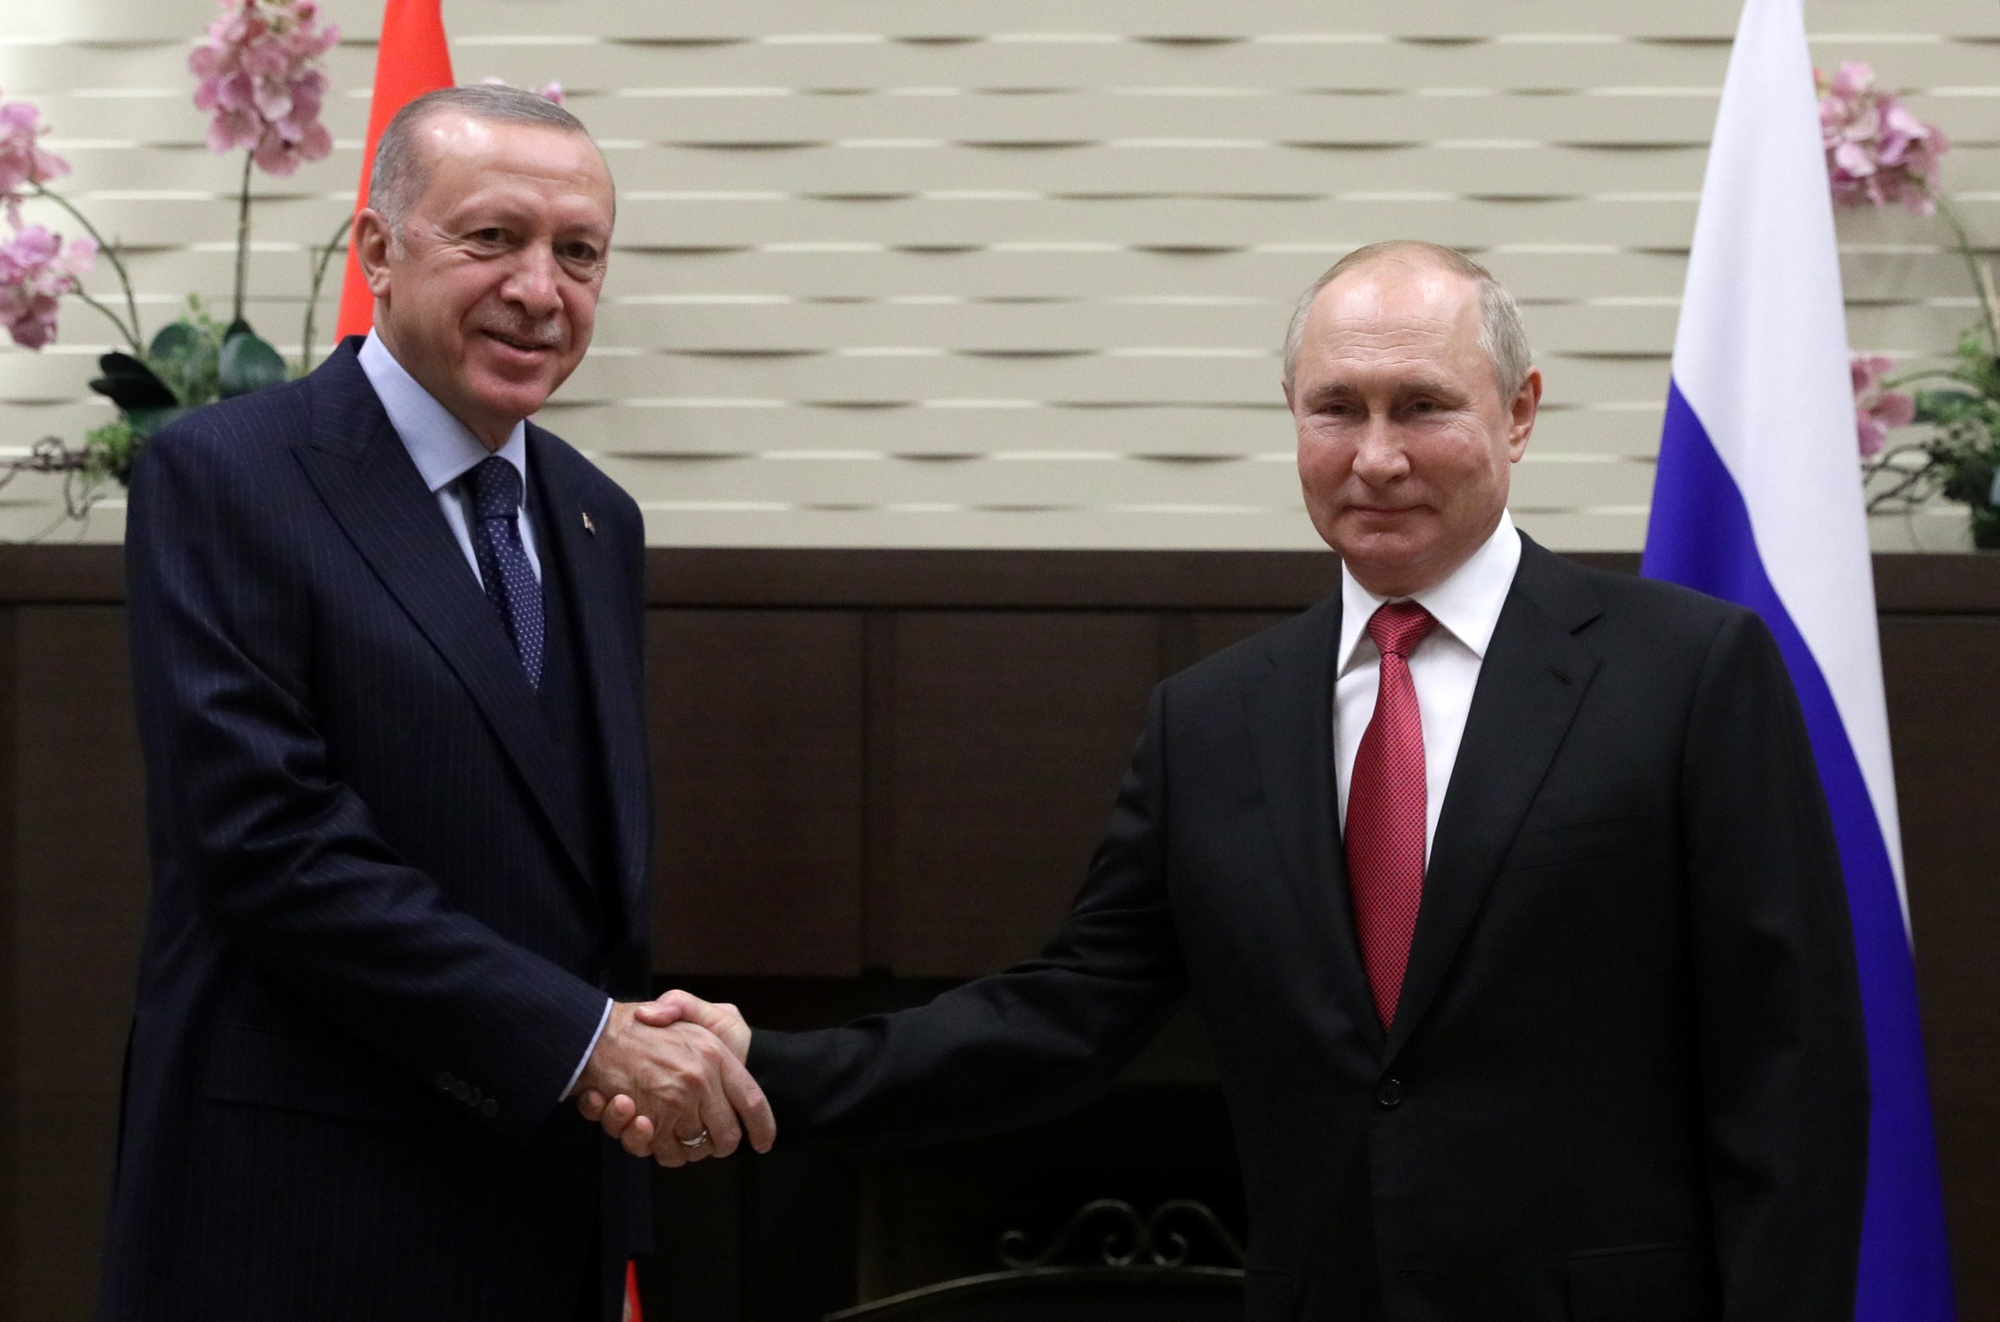 Tổng thống Thổ Nhĩ Kỳ Erdogan nói về thái độ quyết định cách đối phó với ông Putin - Ảnh 1.